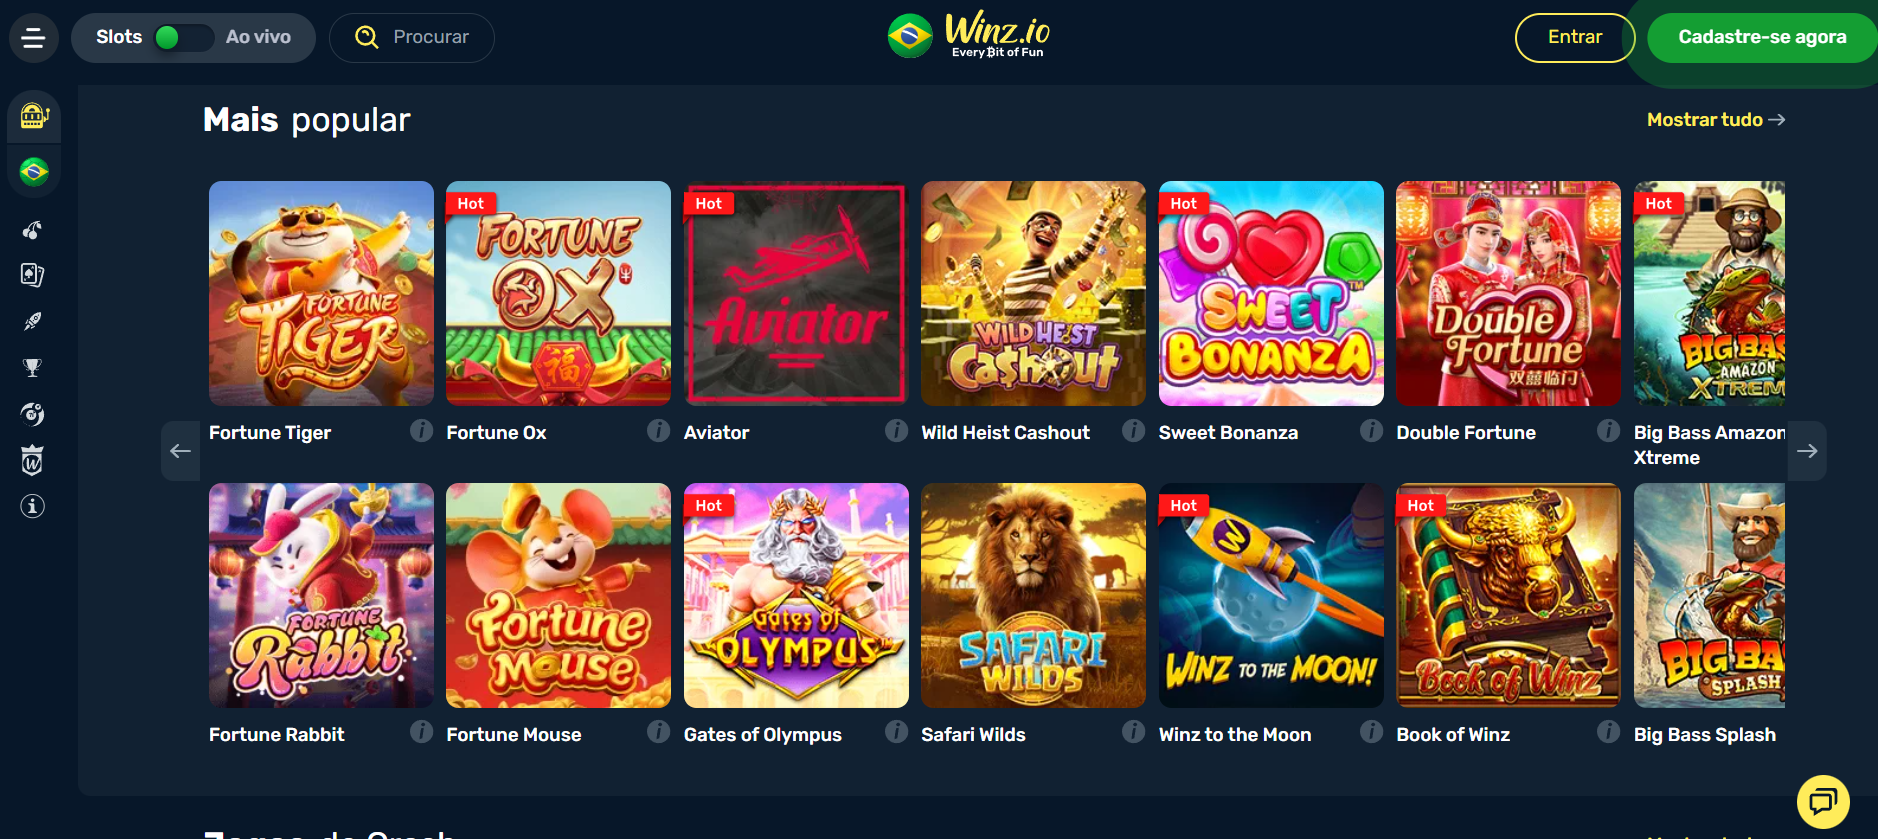 Quais os principais jogos de cassino Winz.io?